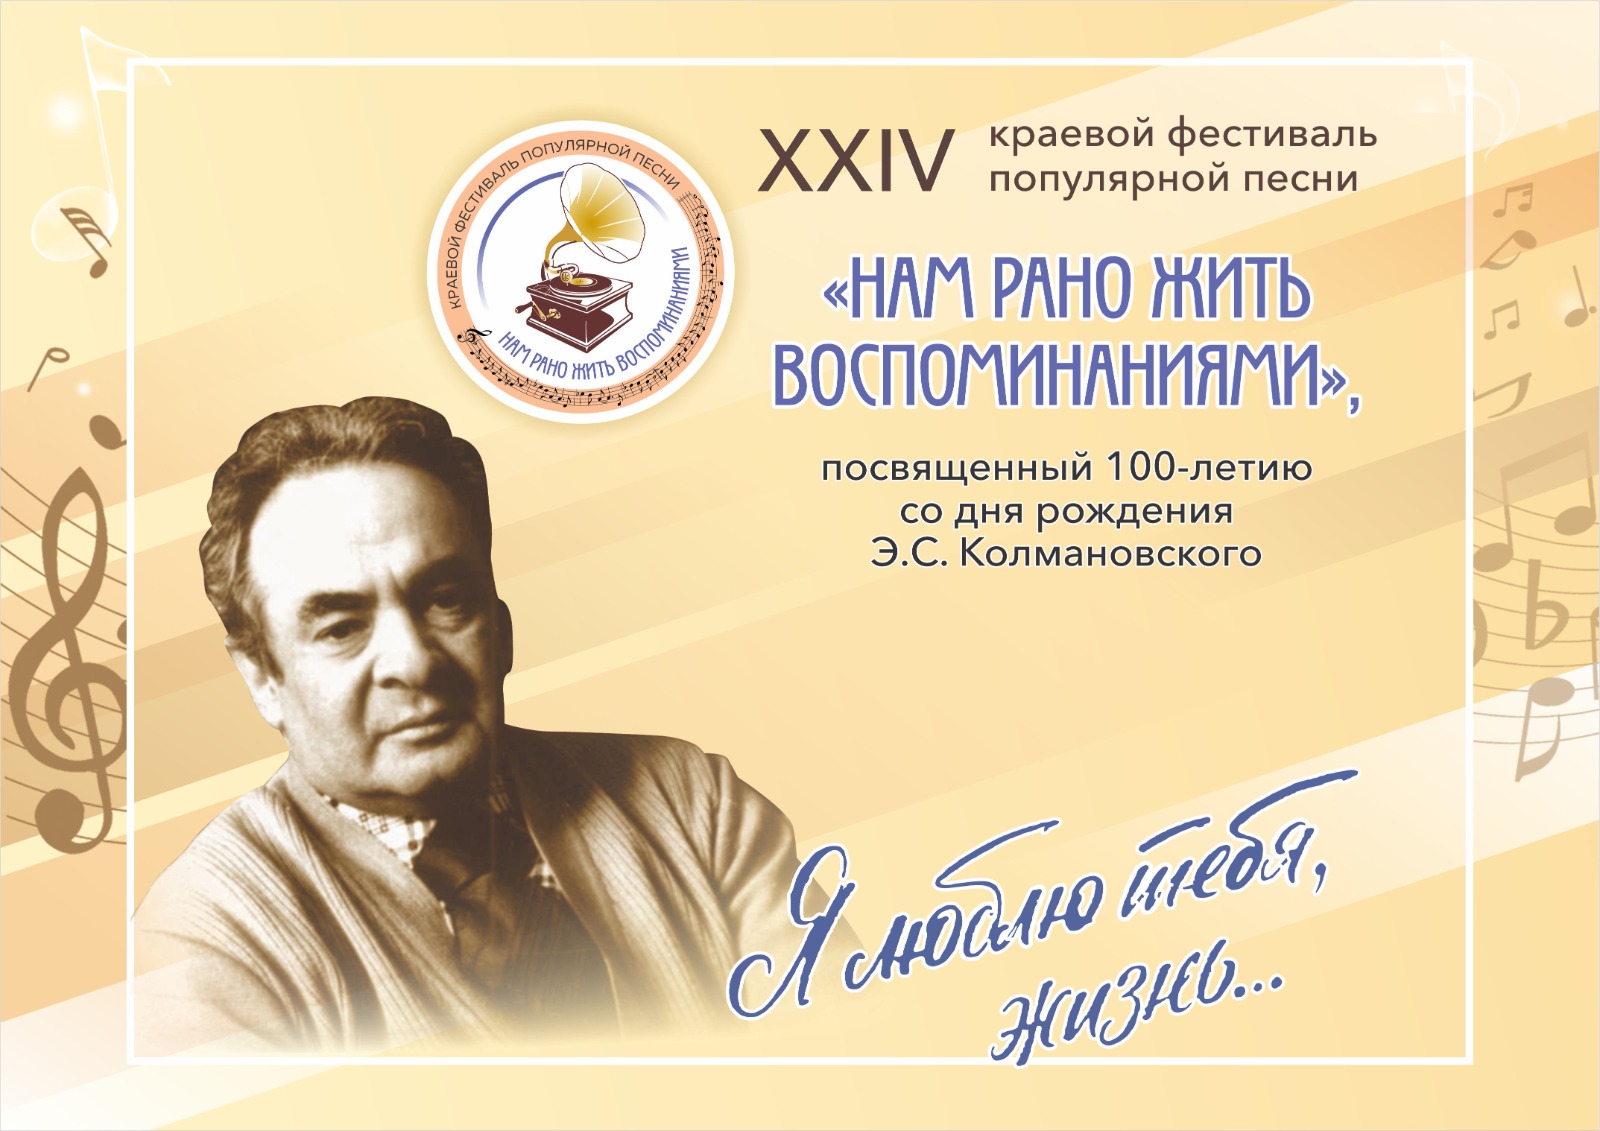 You are currently viewing XXIV краевой фестиваль популярной песни «Нам рано жить воспоминаниями»